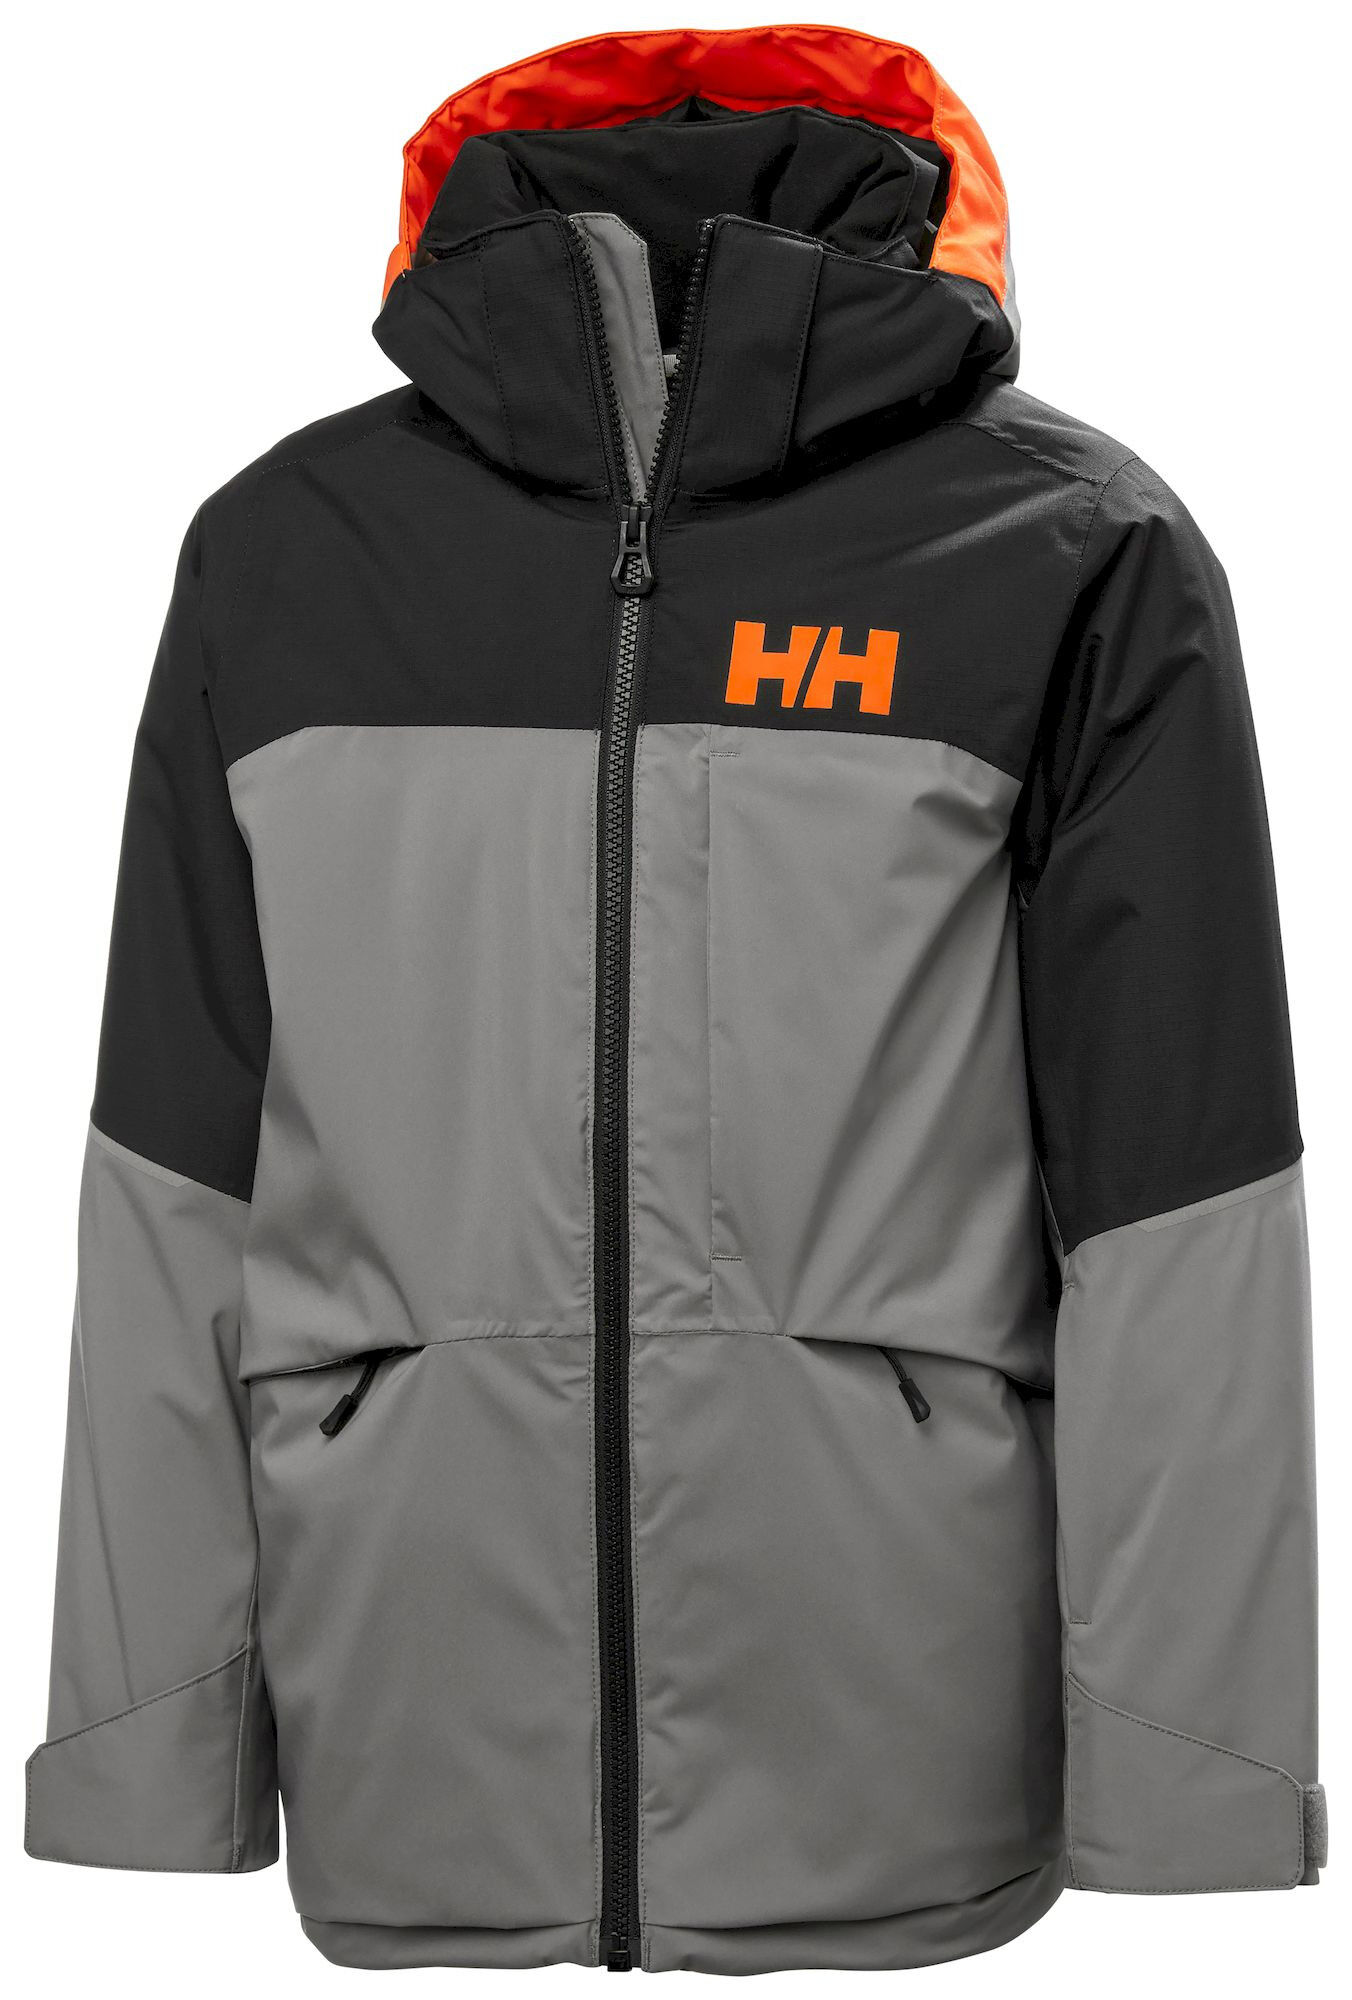 Helly Hansen Jr Summit Jacket - Chaqueta de esquí - Niños | Hardloop